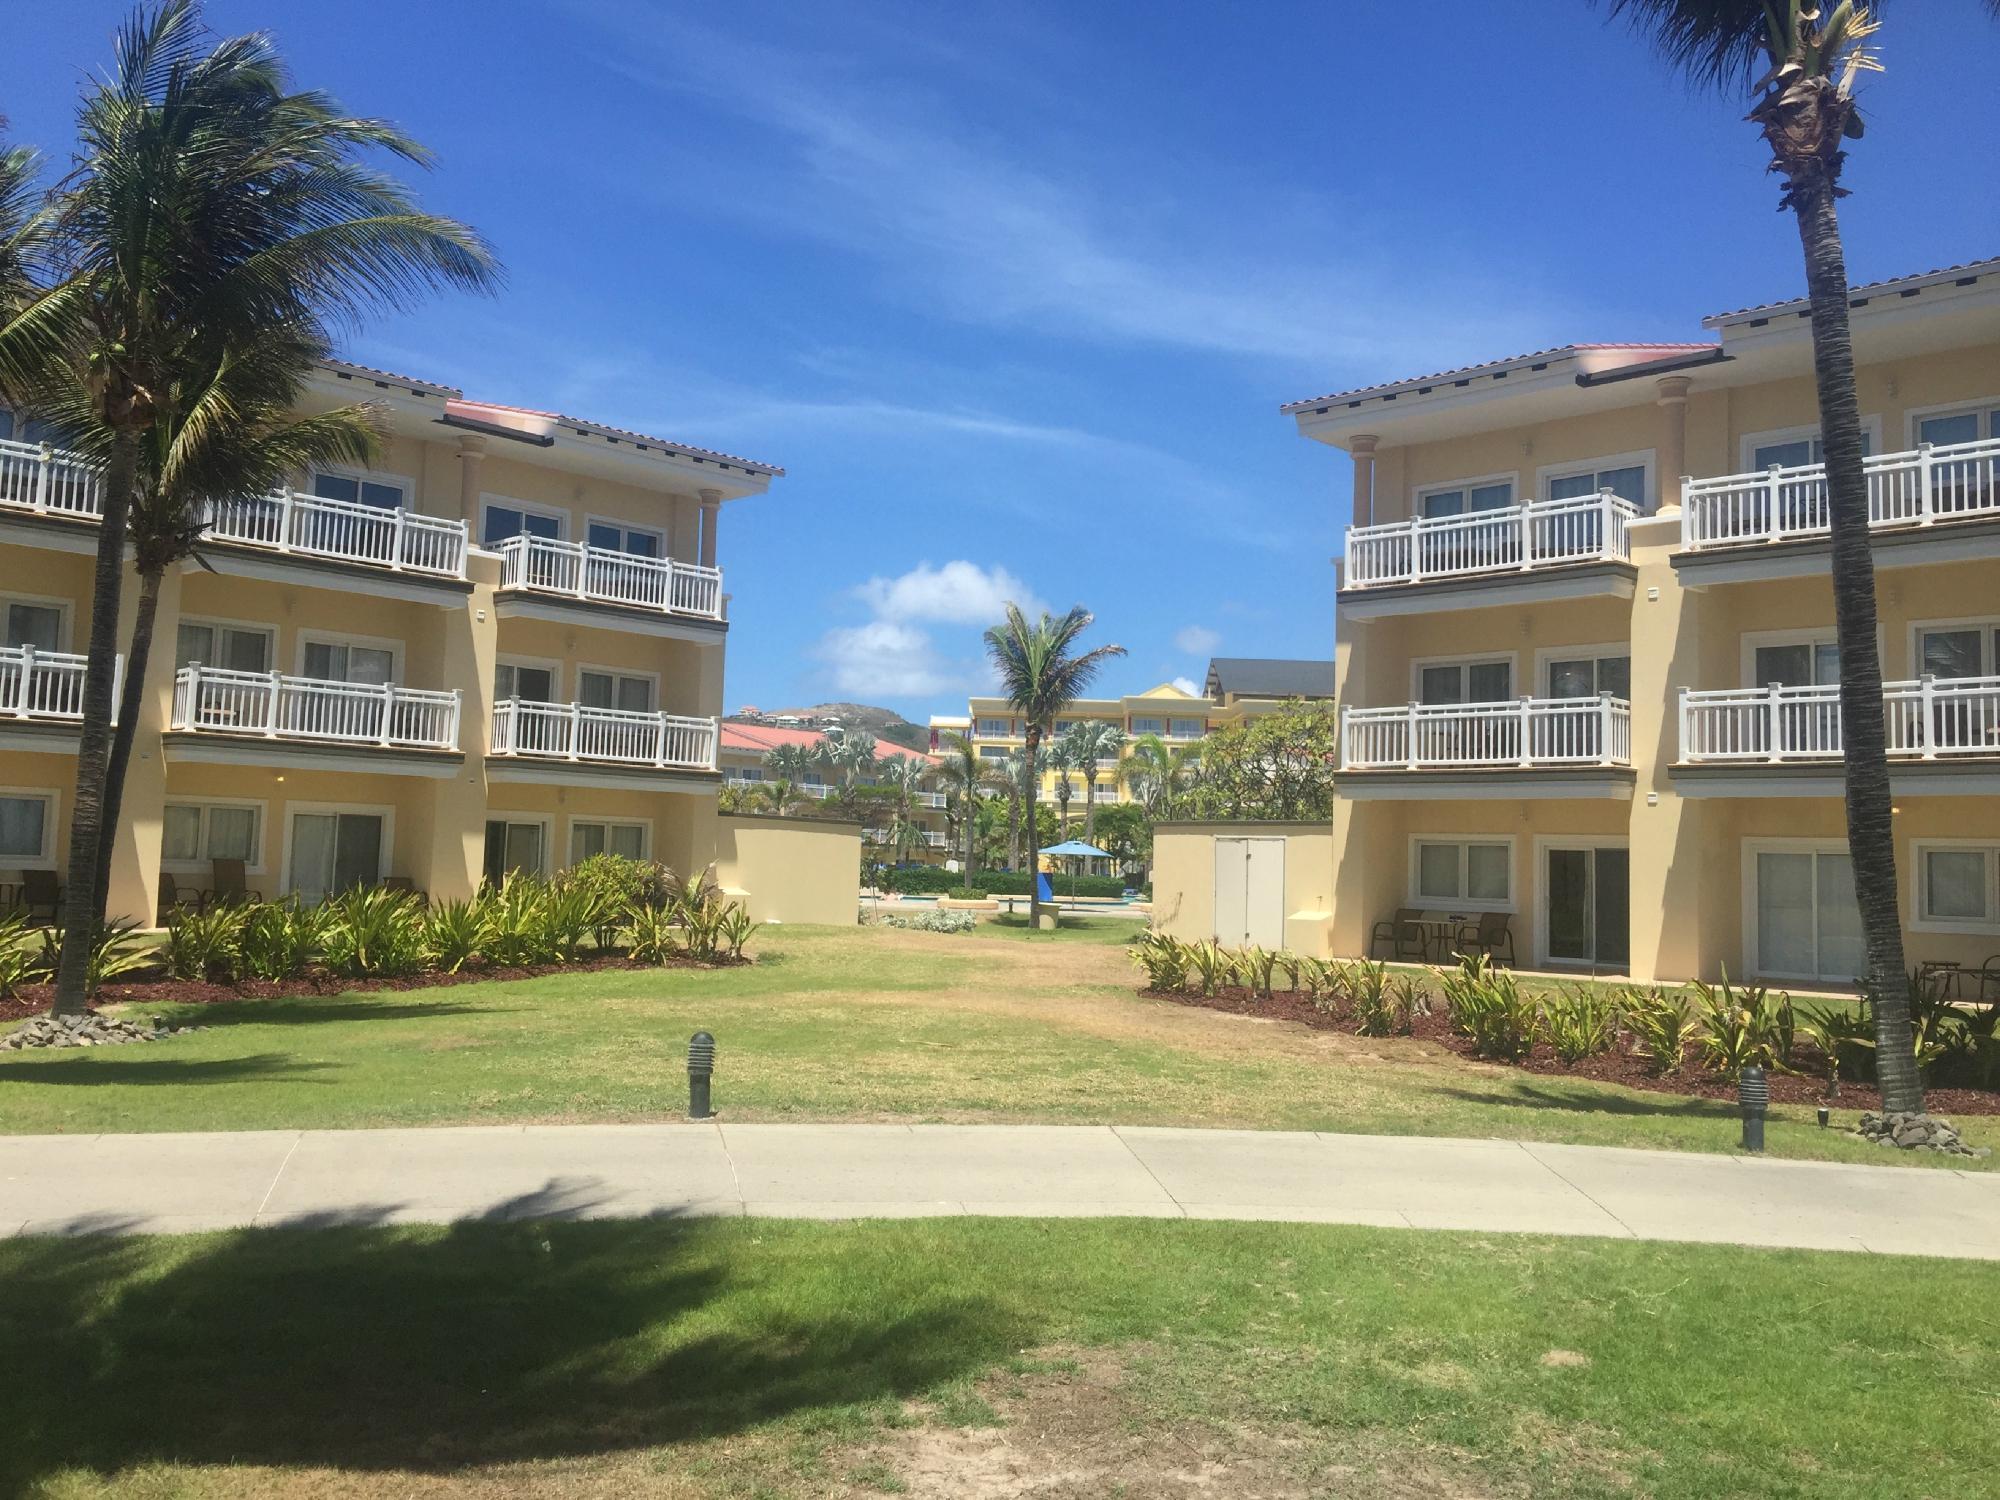 Marriott's St. Kitts Beach Club Buildlings